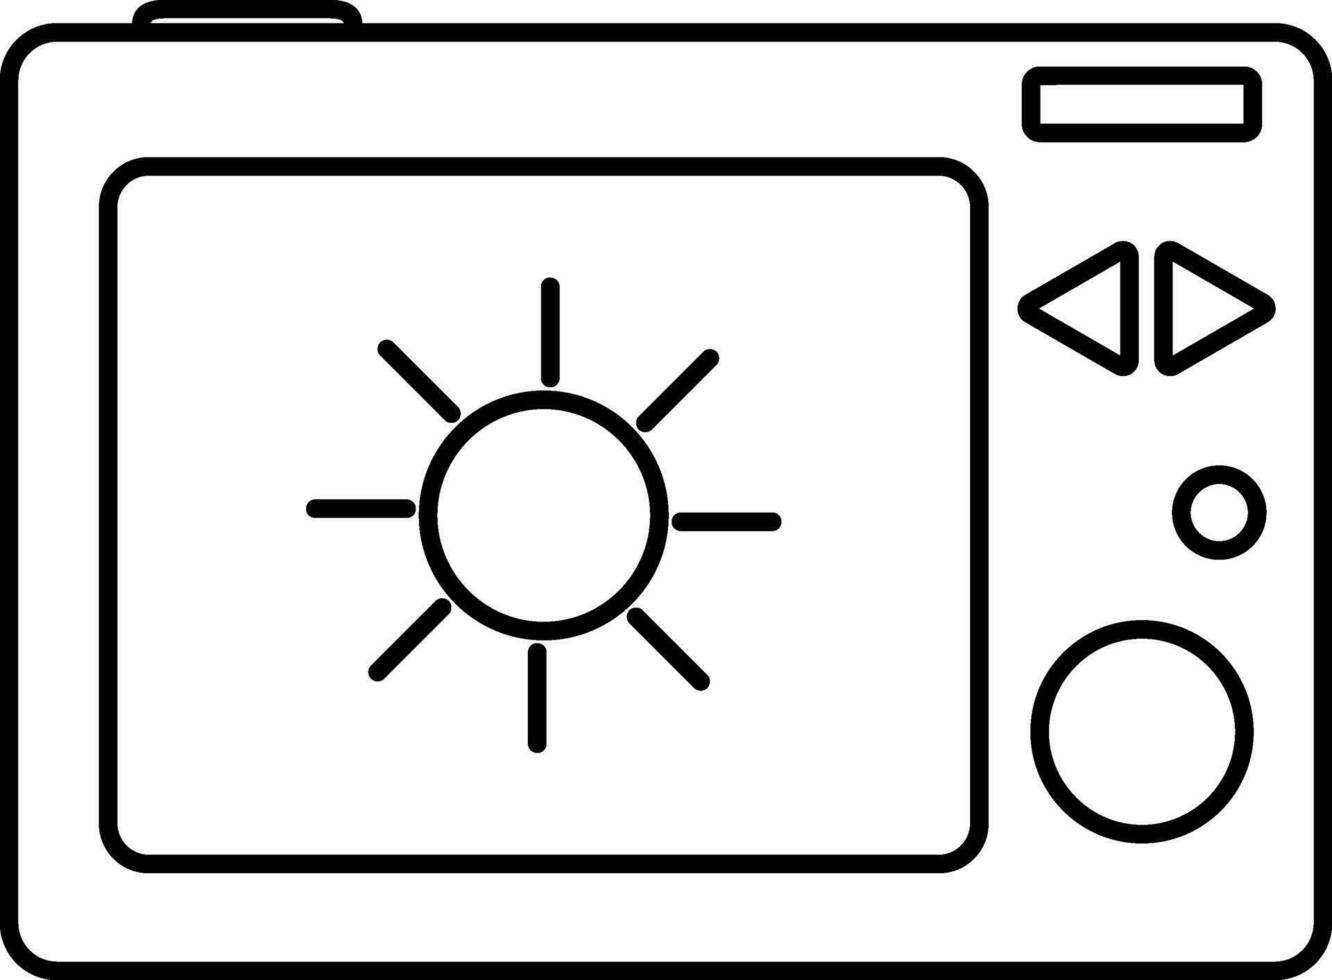 Sonnenlicht Modus Symbol auf Kamera Bildschirm. vektor